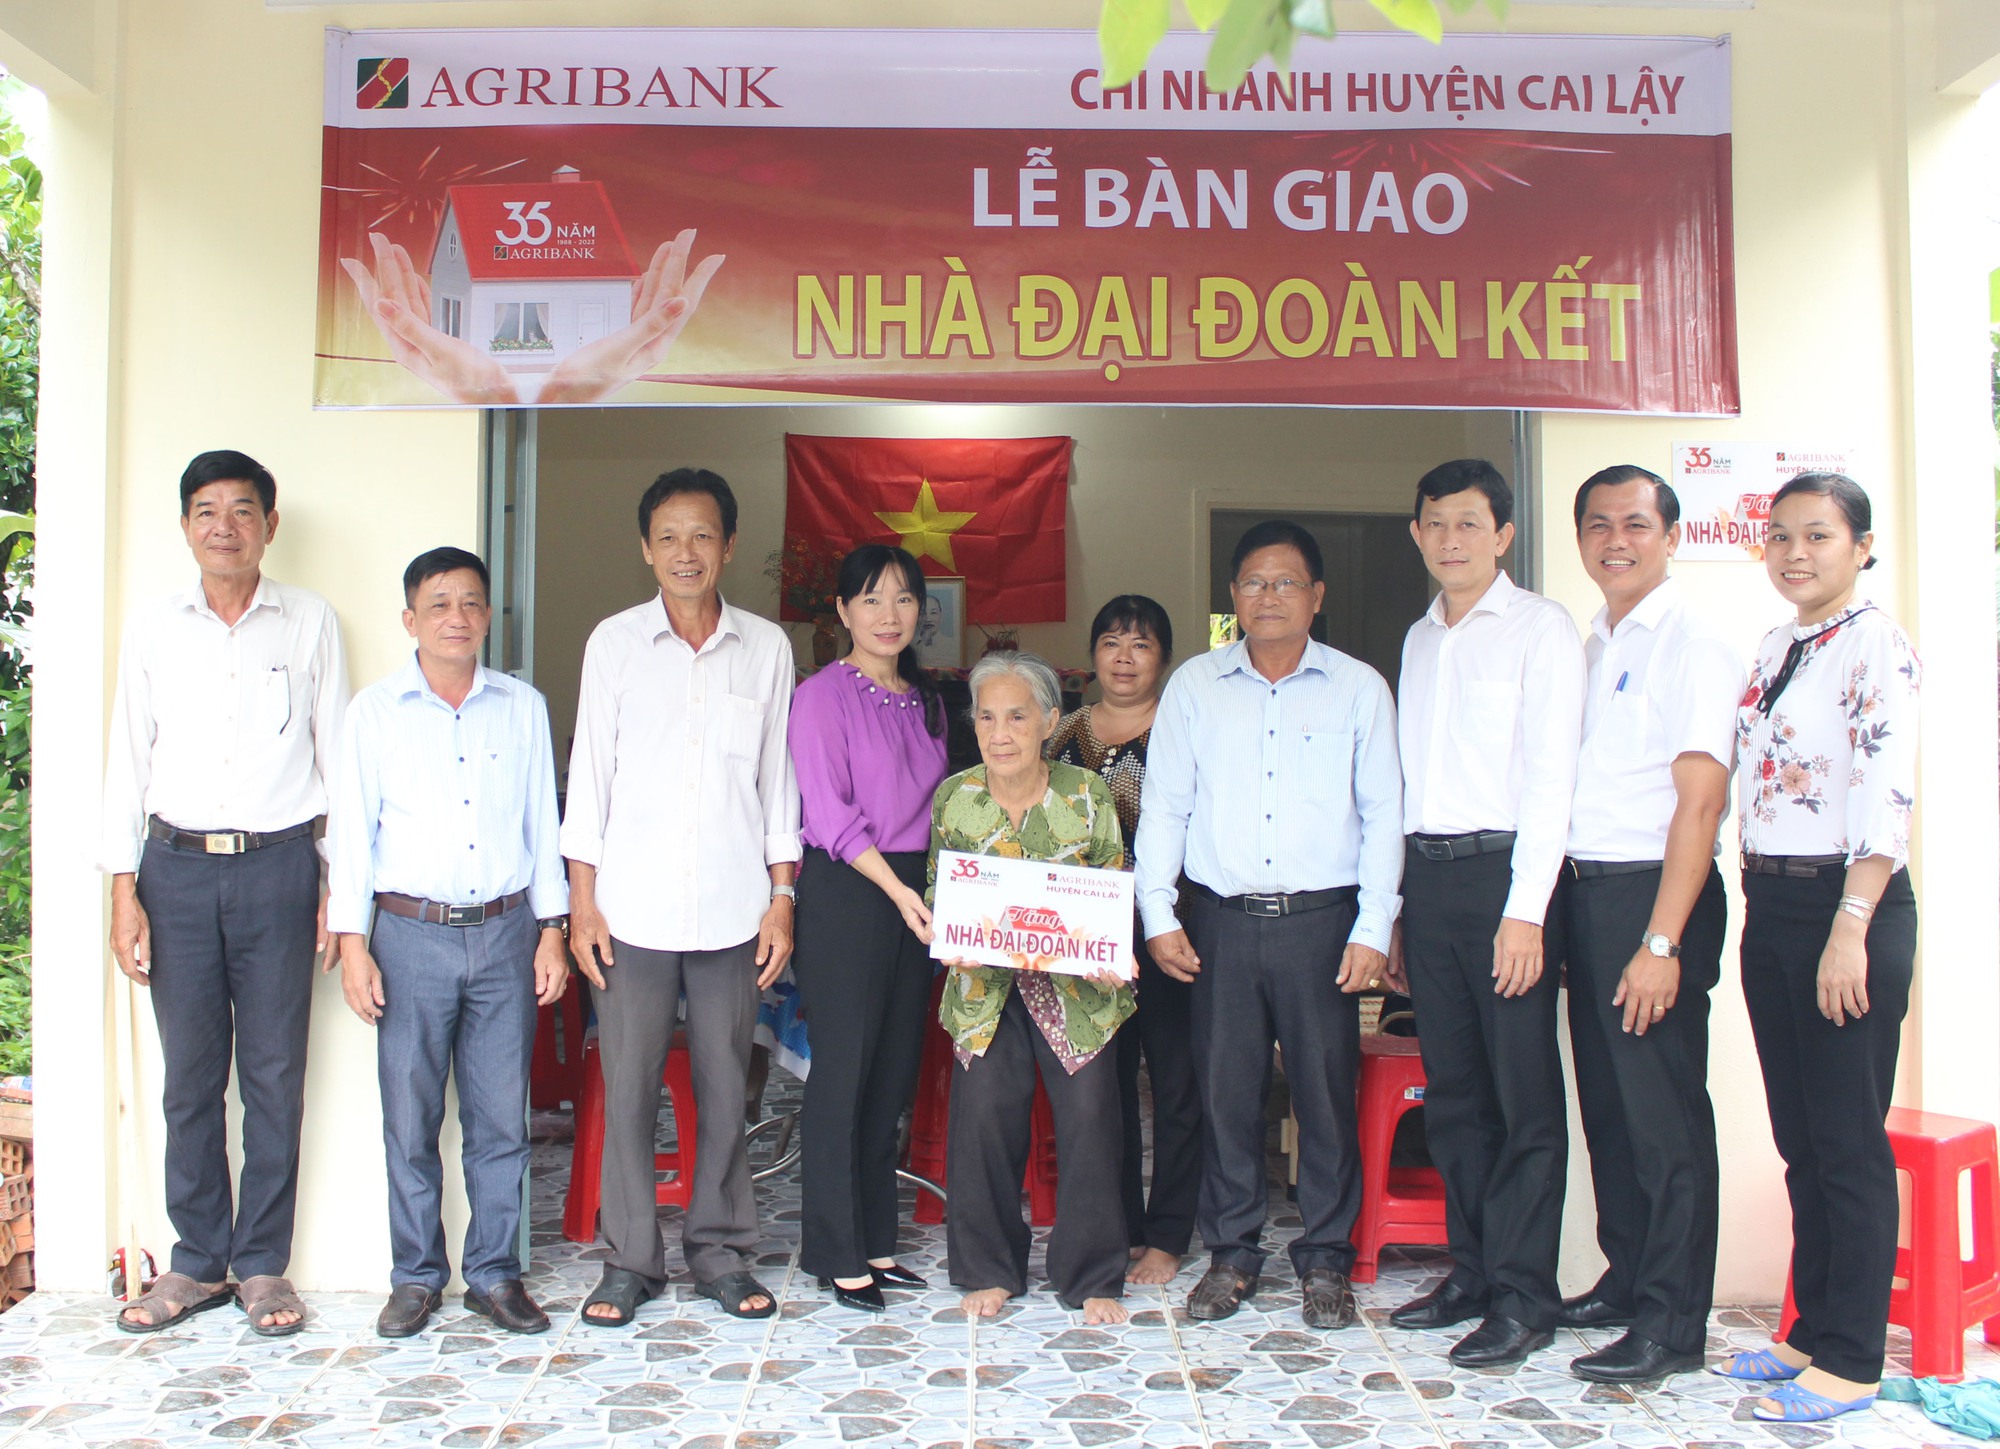 Agribank bàn giao 16 nhà Đại đoàn kết tại huyện Cai Lậy, tỉnh Tiền Giang - Ảnh 1.